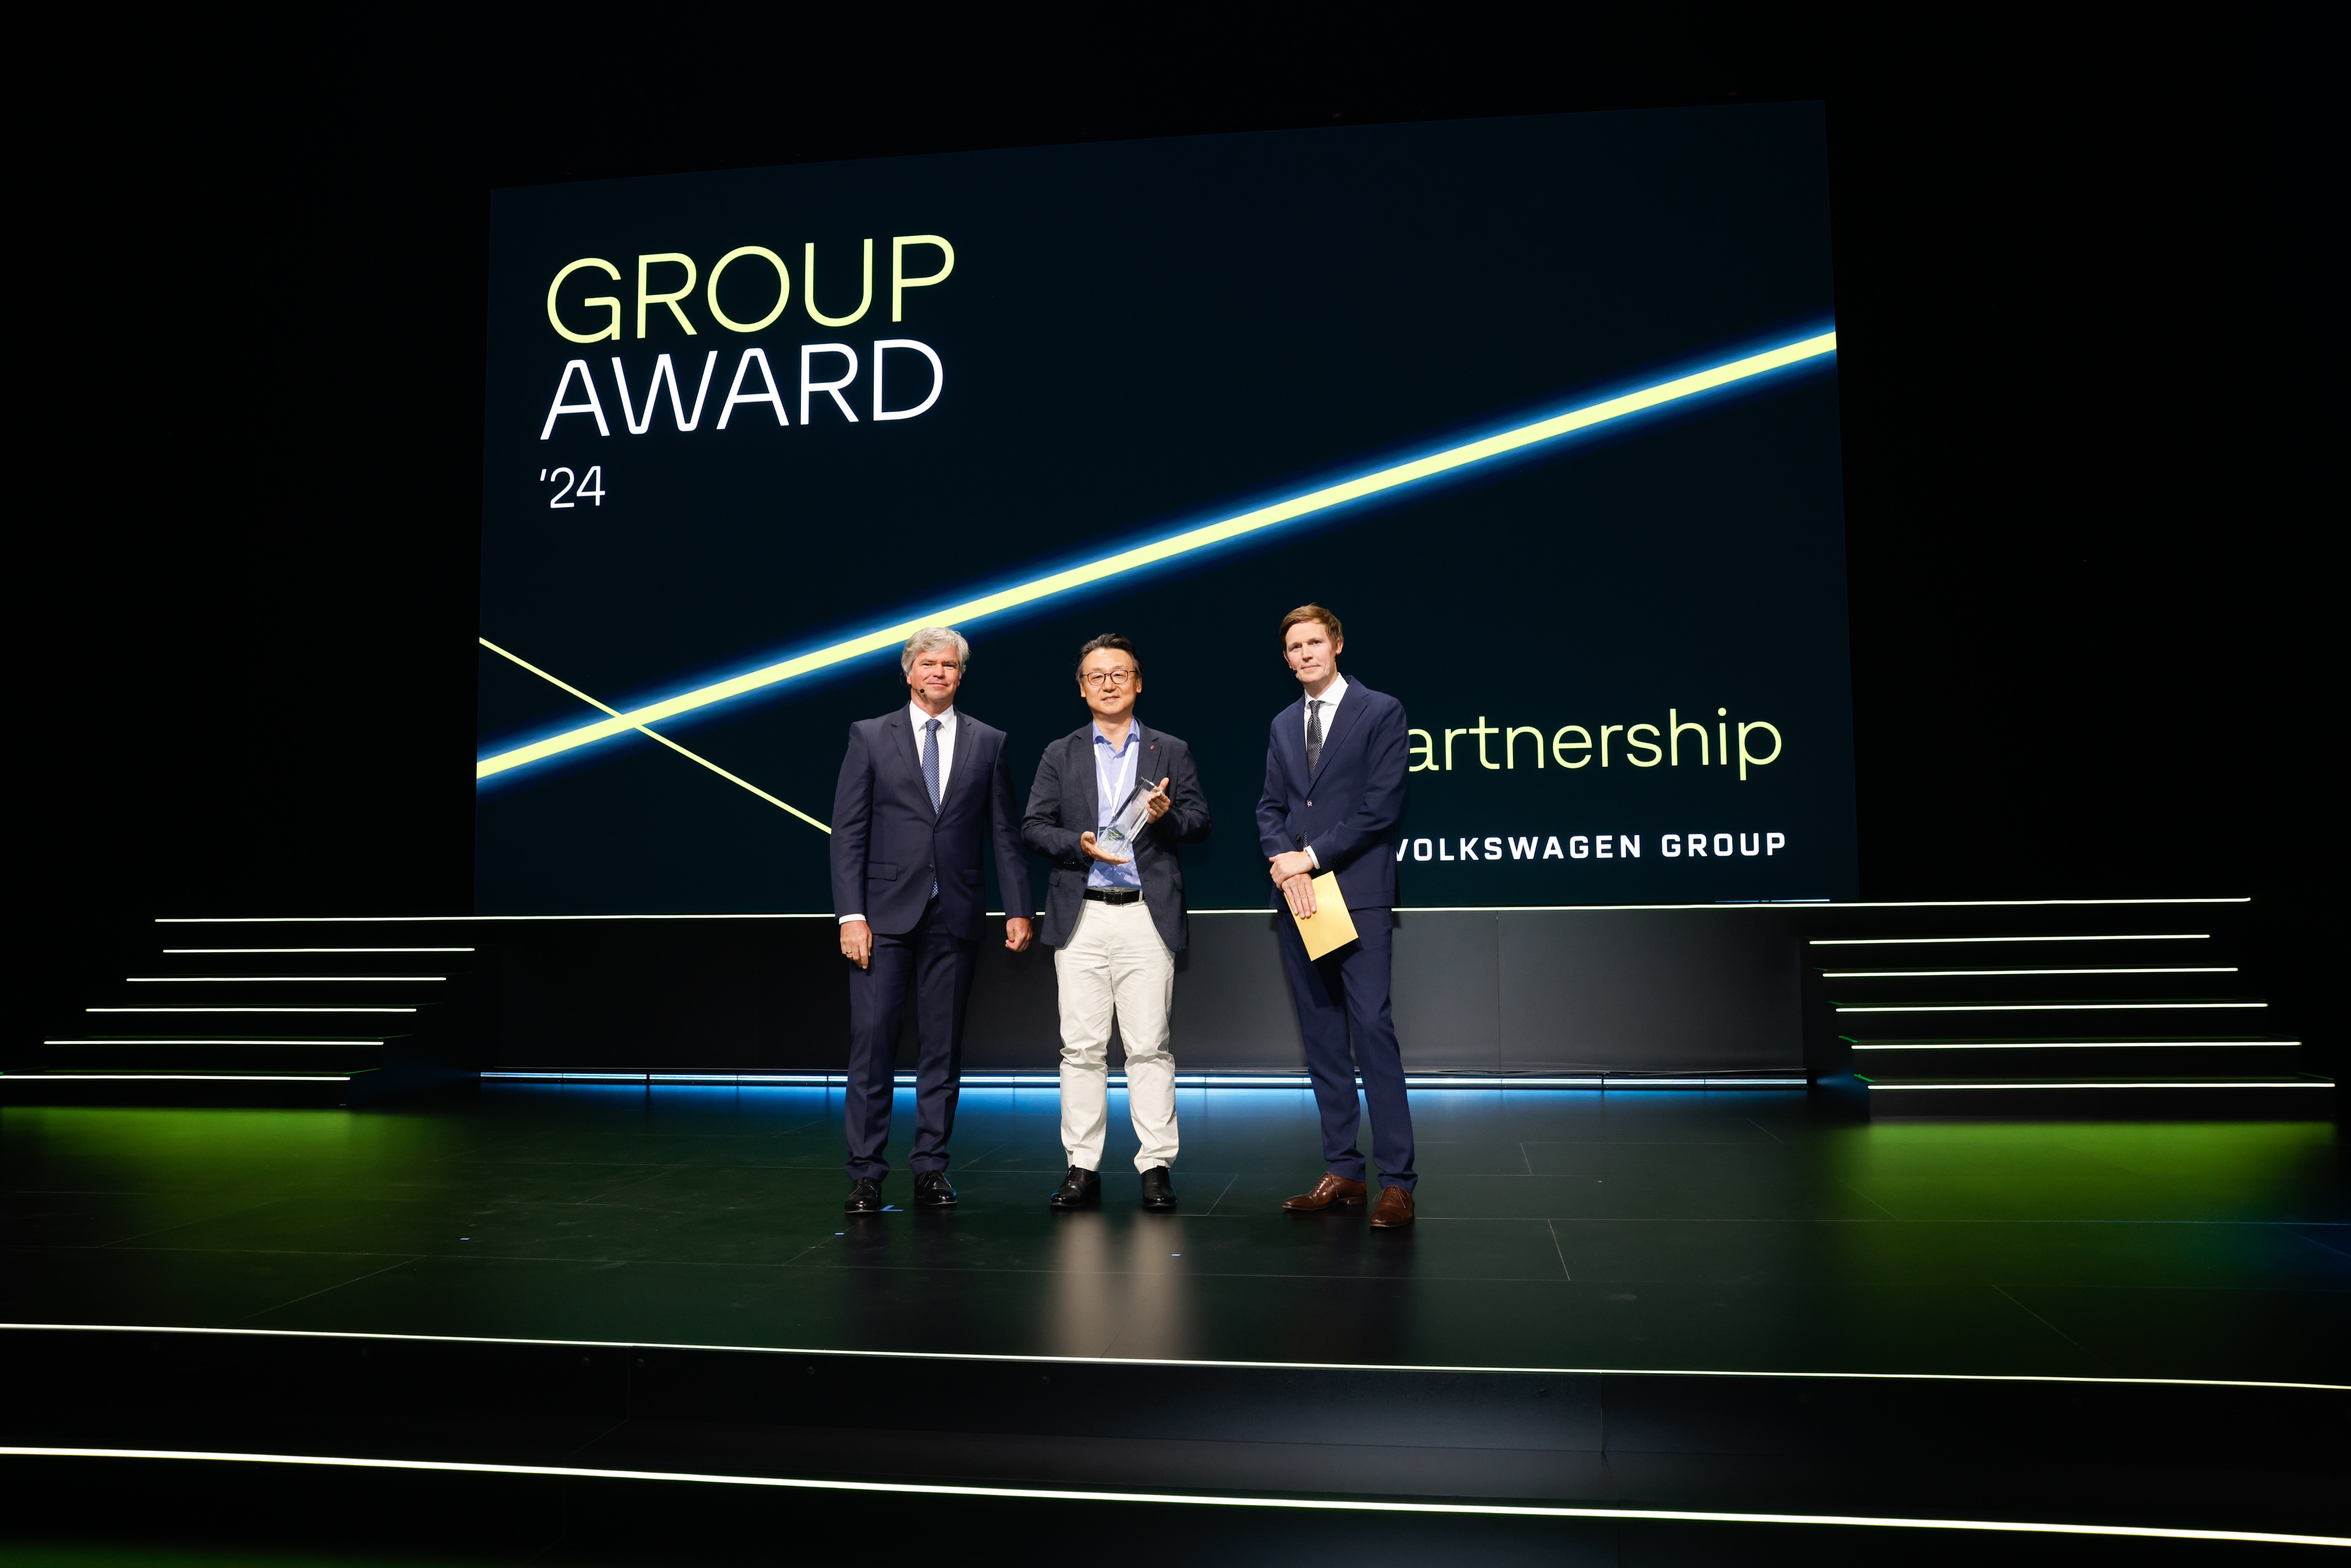 LG Honored at Vlokswagen Group Award 2024